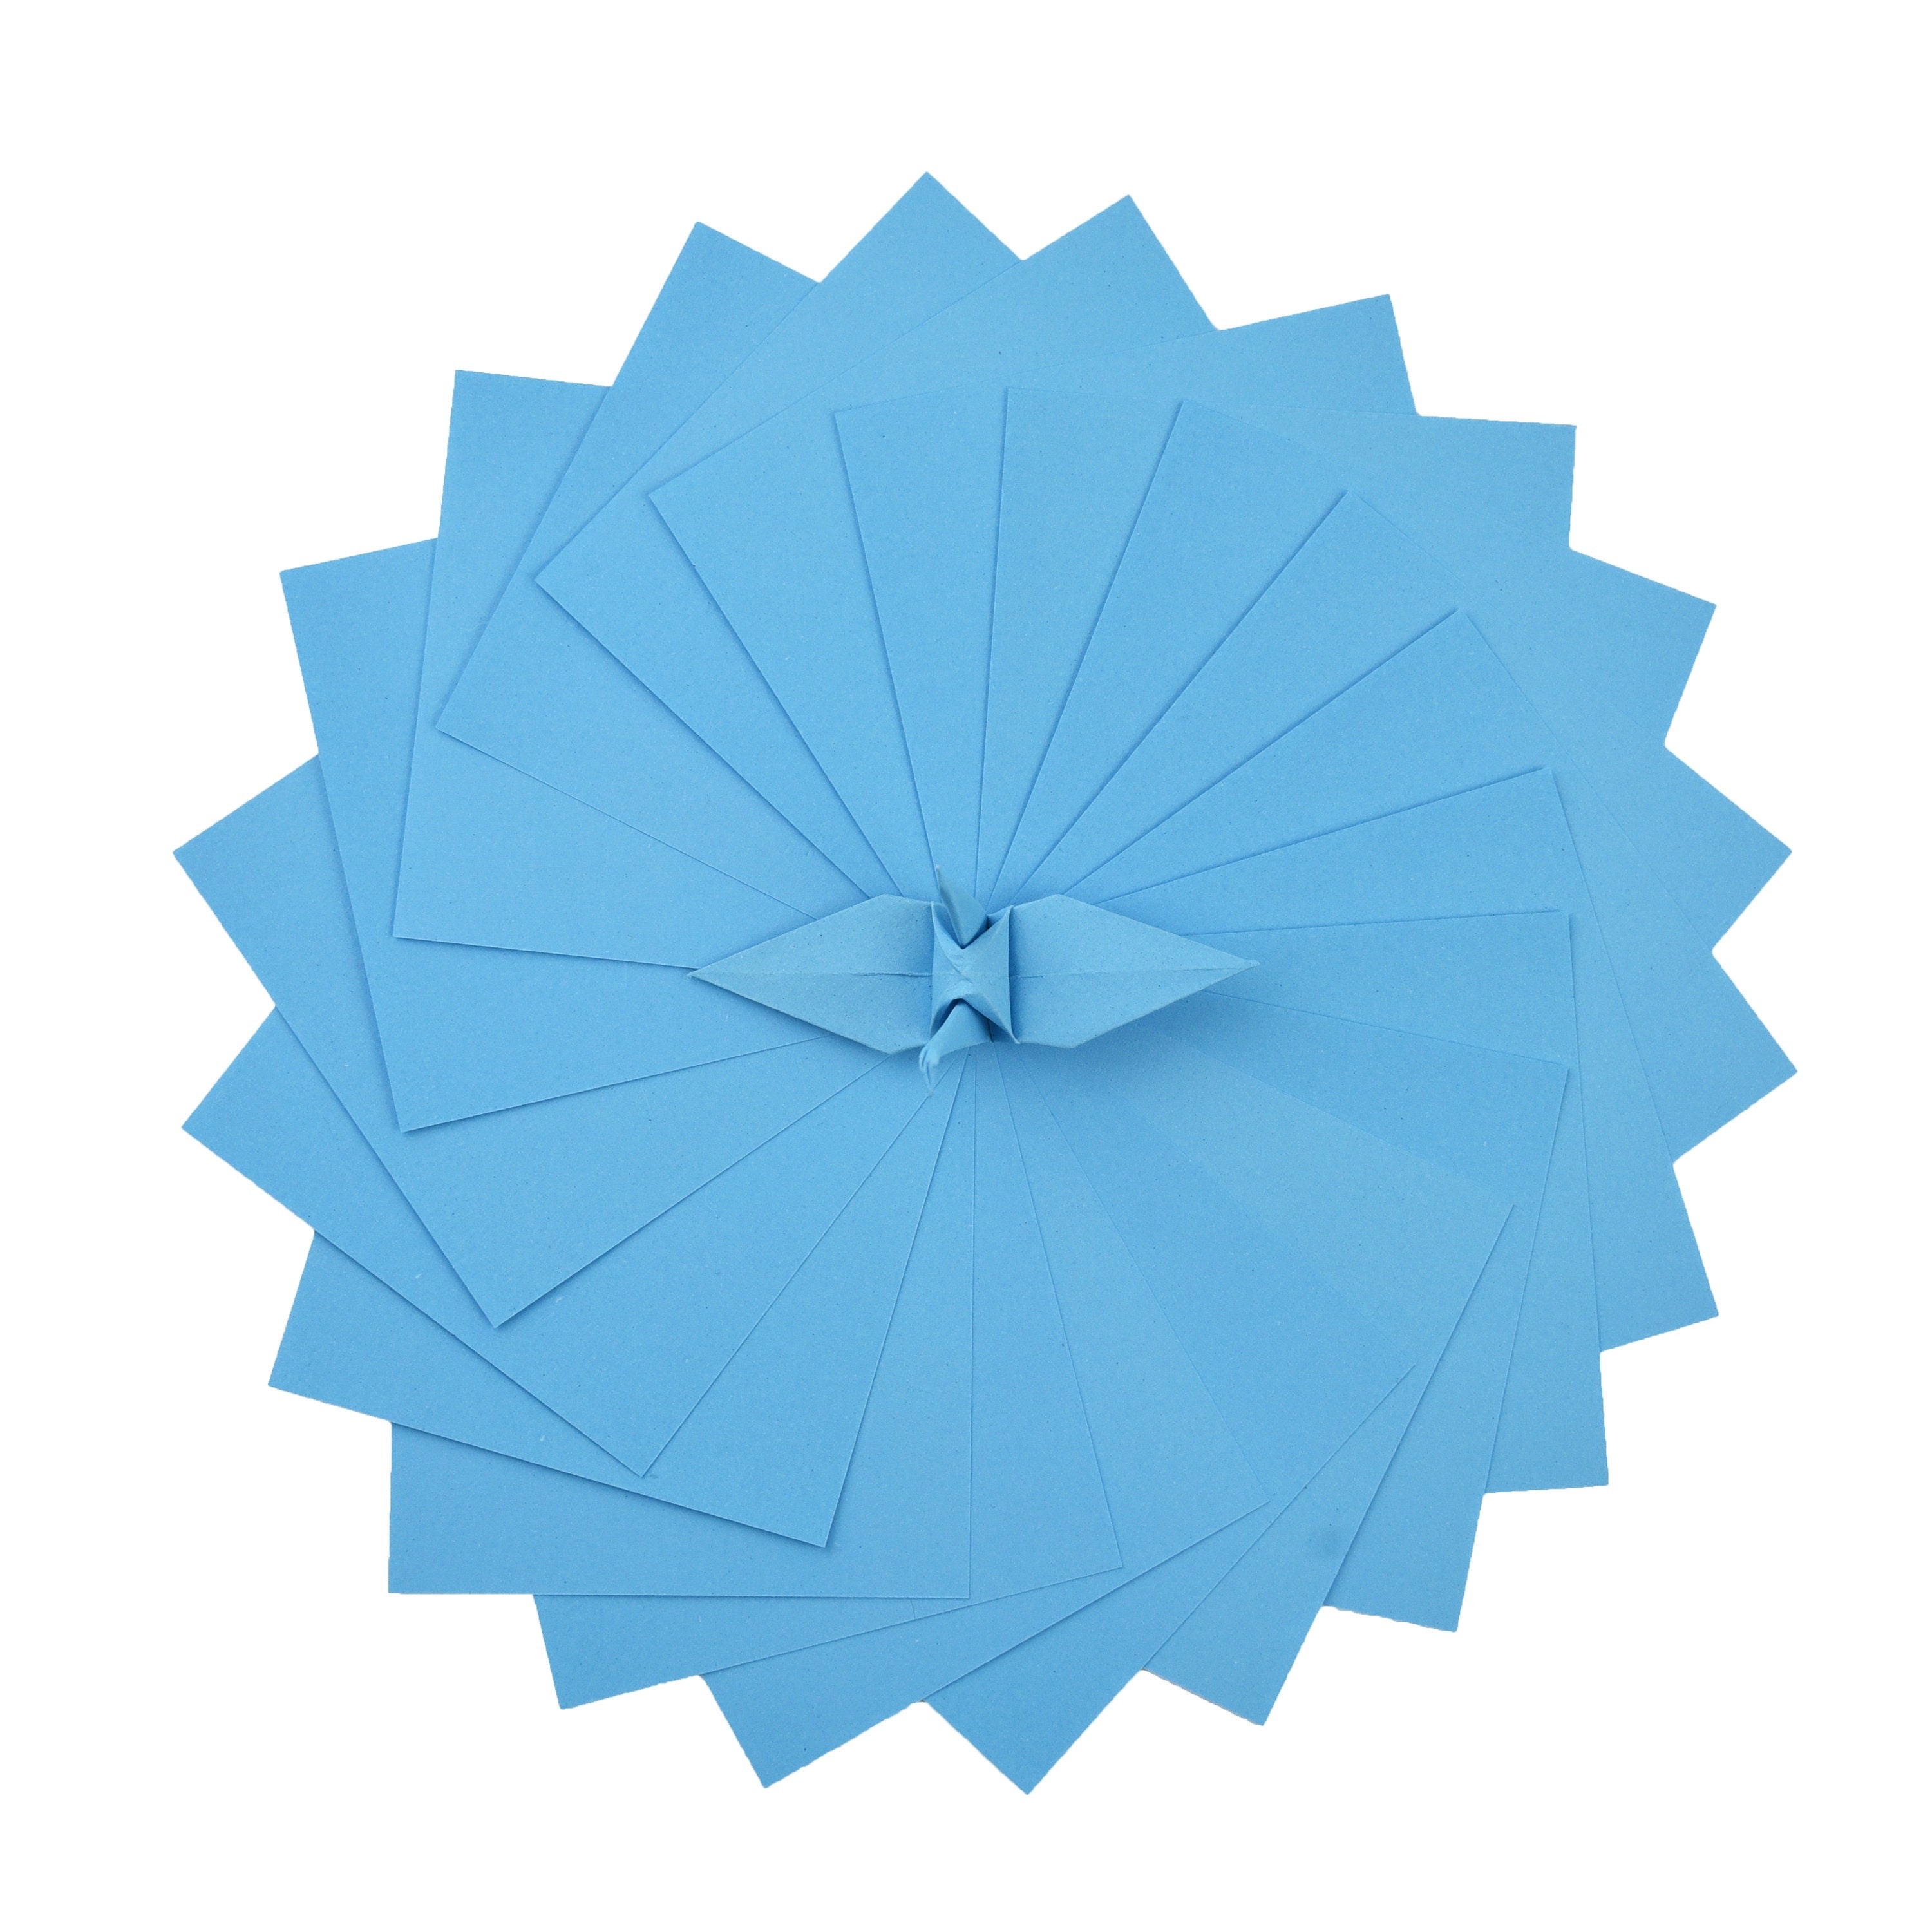 100 fogli di carta origami - 3x3 pollici - Confezione di carta quadrata per piegare, gru origami e decorazioni - S17